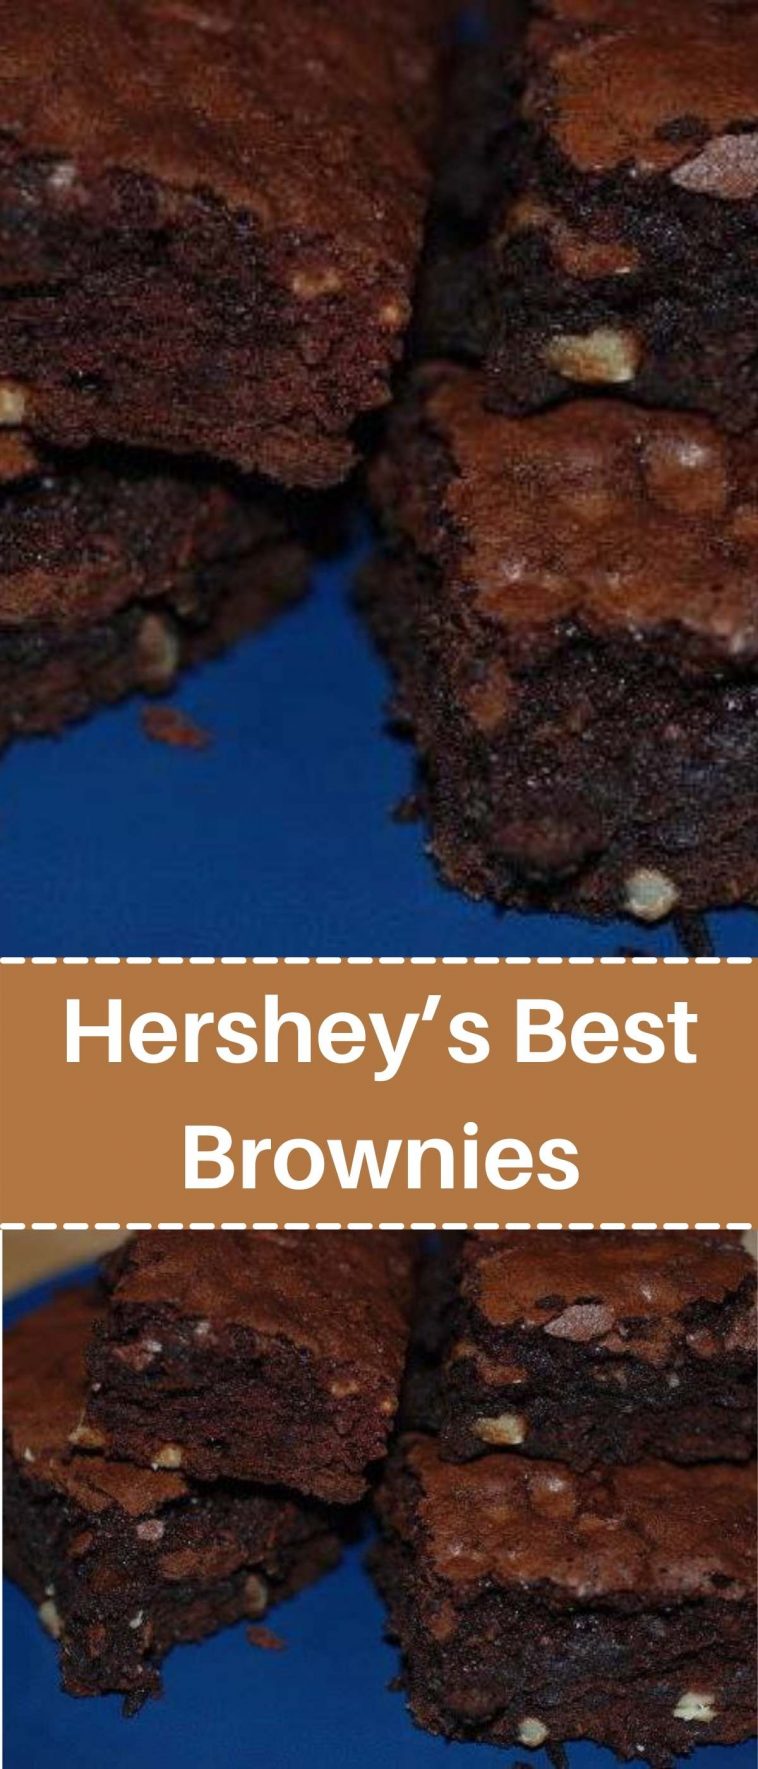 Hershey’s Best Brownies